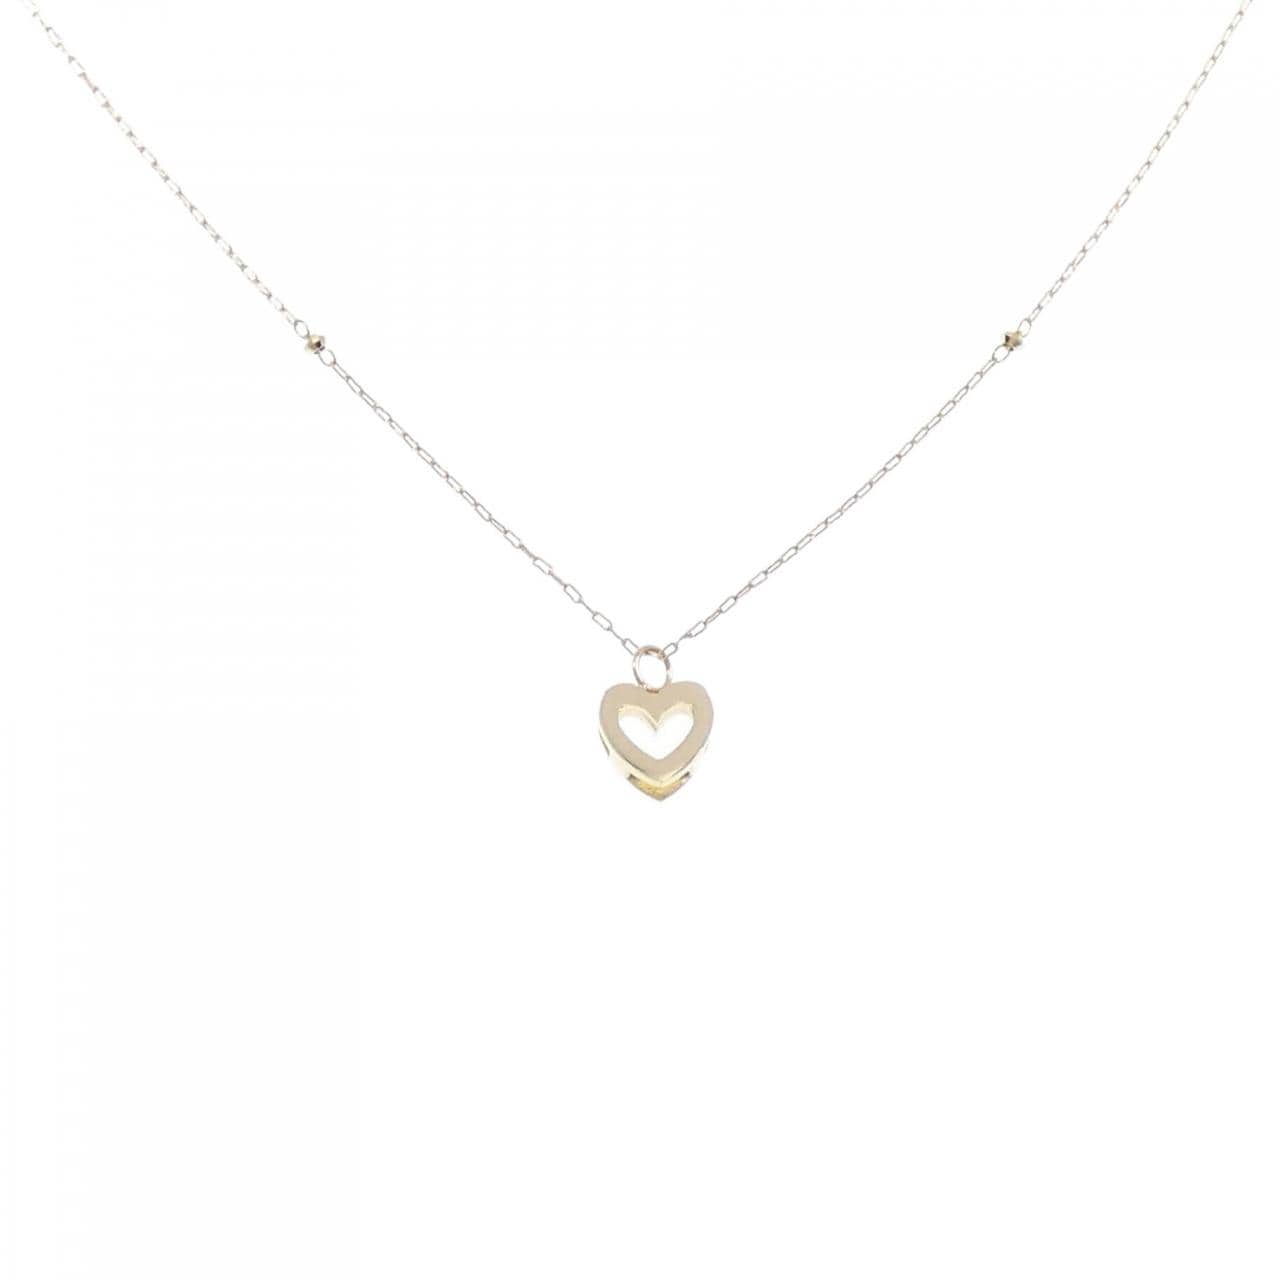 K18YG heart necklace